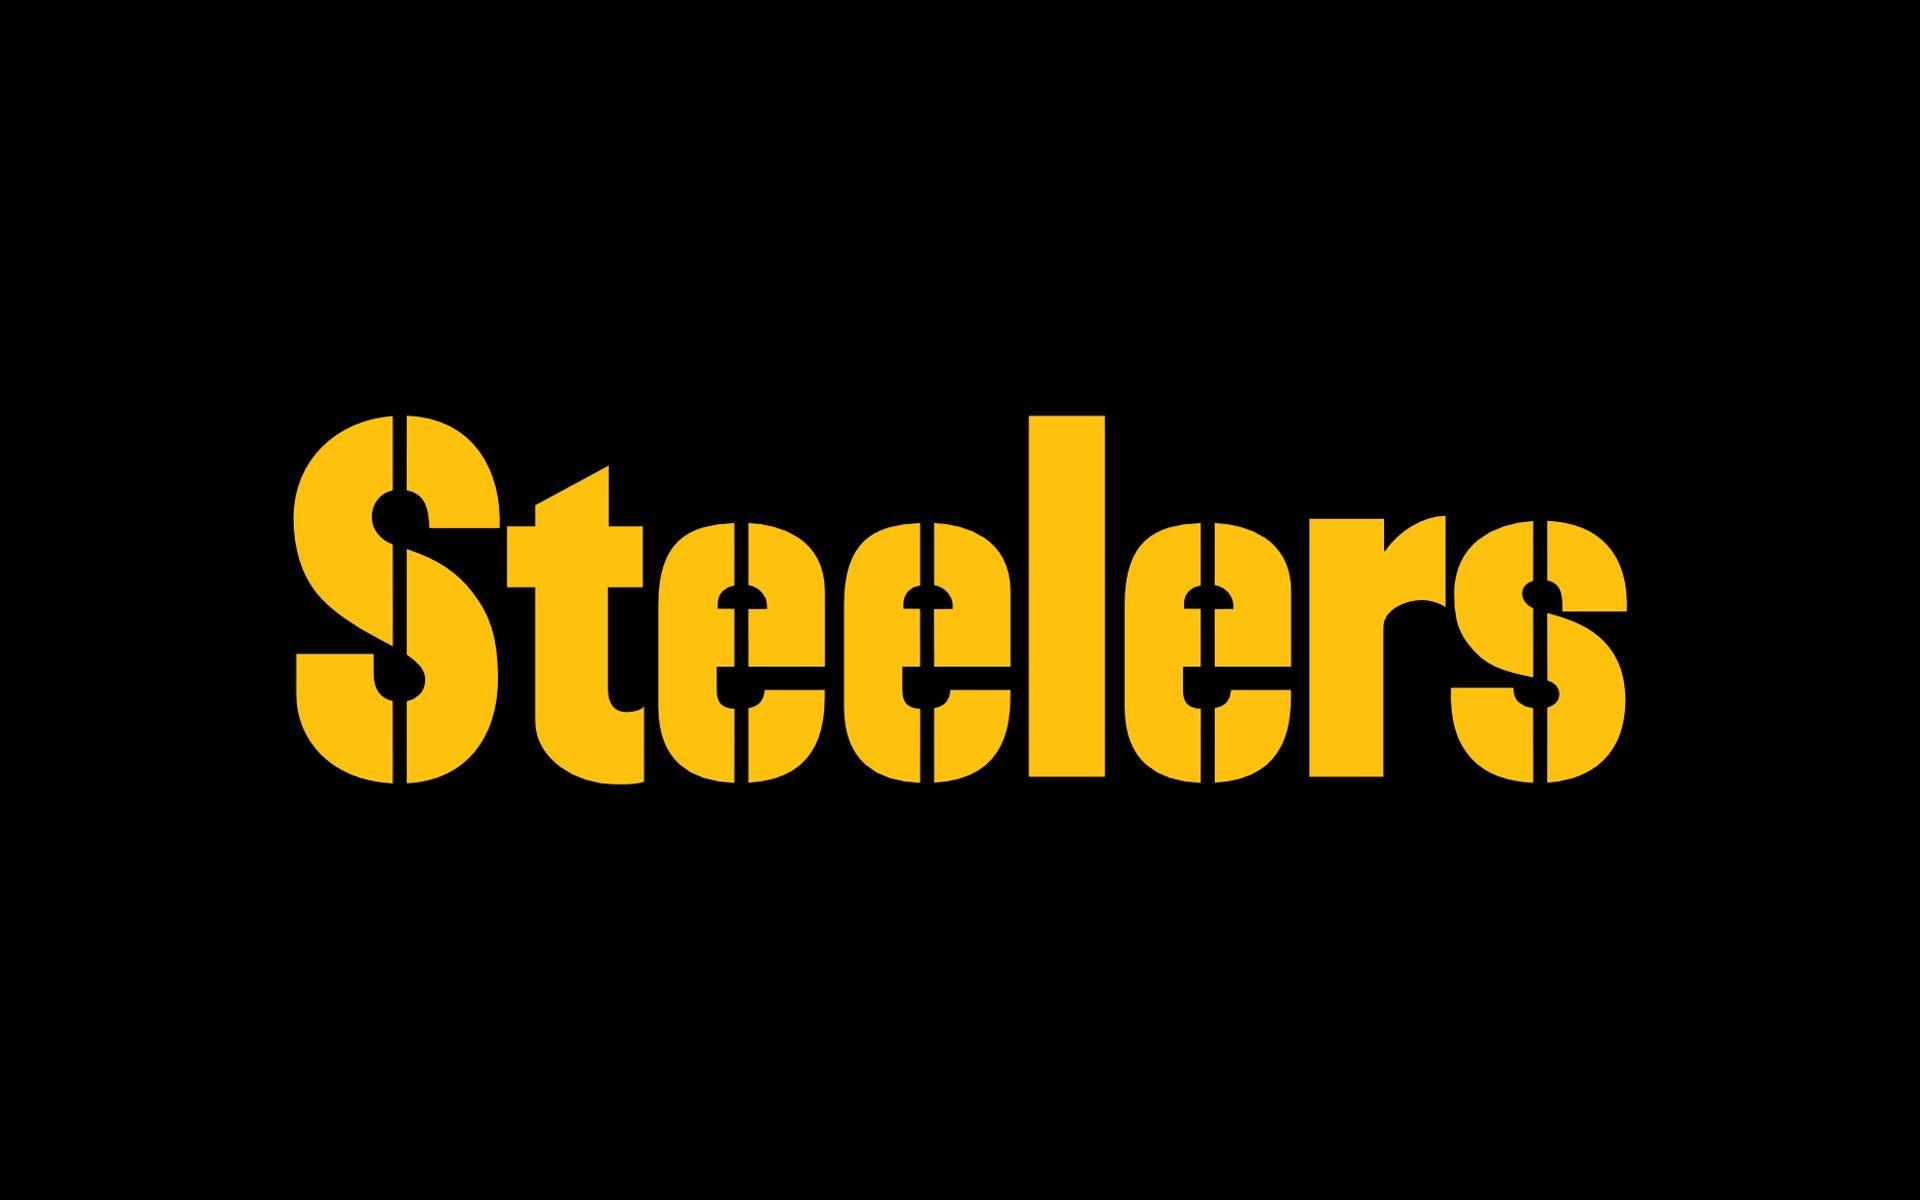 Steelers Logo HD Image ) wallpaper